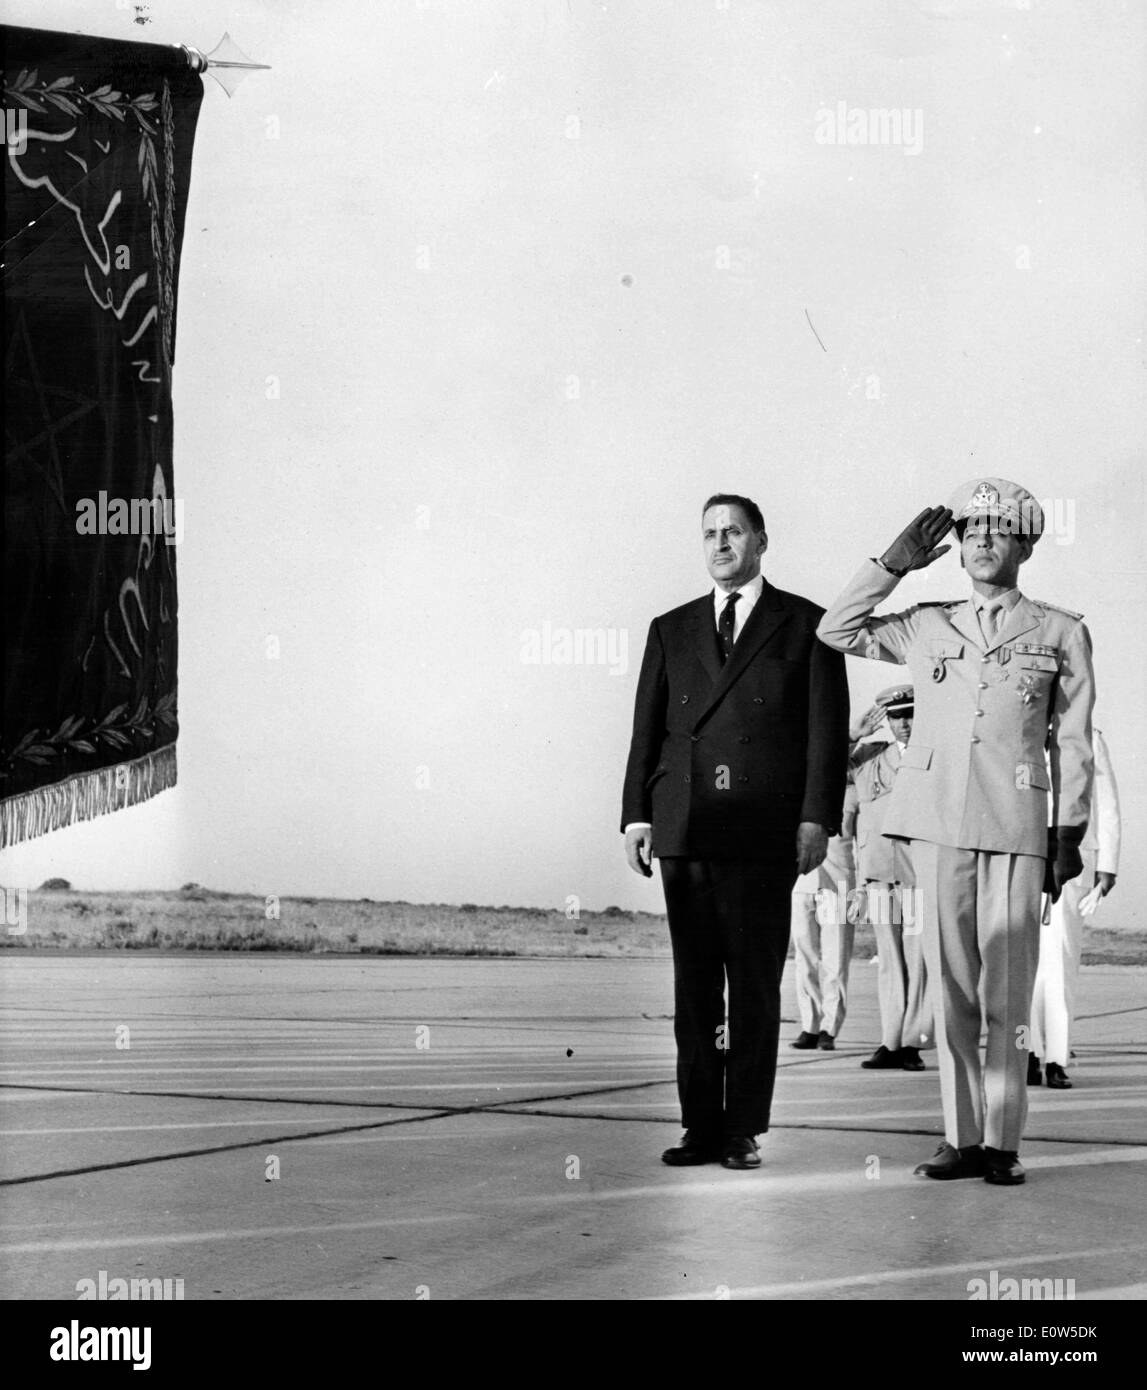 Jul 06, 1961 ; Rabat, Maroc ; M. FERHART ABBAS, président de l'G.P.R.A. (Government Performance and Results Act) est arrivé à Rabat, où il aura plusieurs entretiens avec le Roi Hassan II. La photo montre Abbas lors de son arrivée à côté de l'aéroport Roi Hassan à Rabat. Banque D'Images